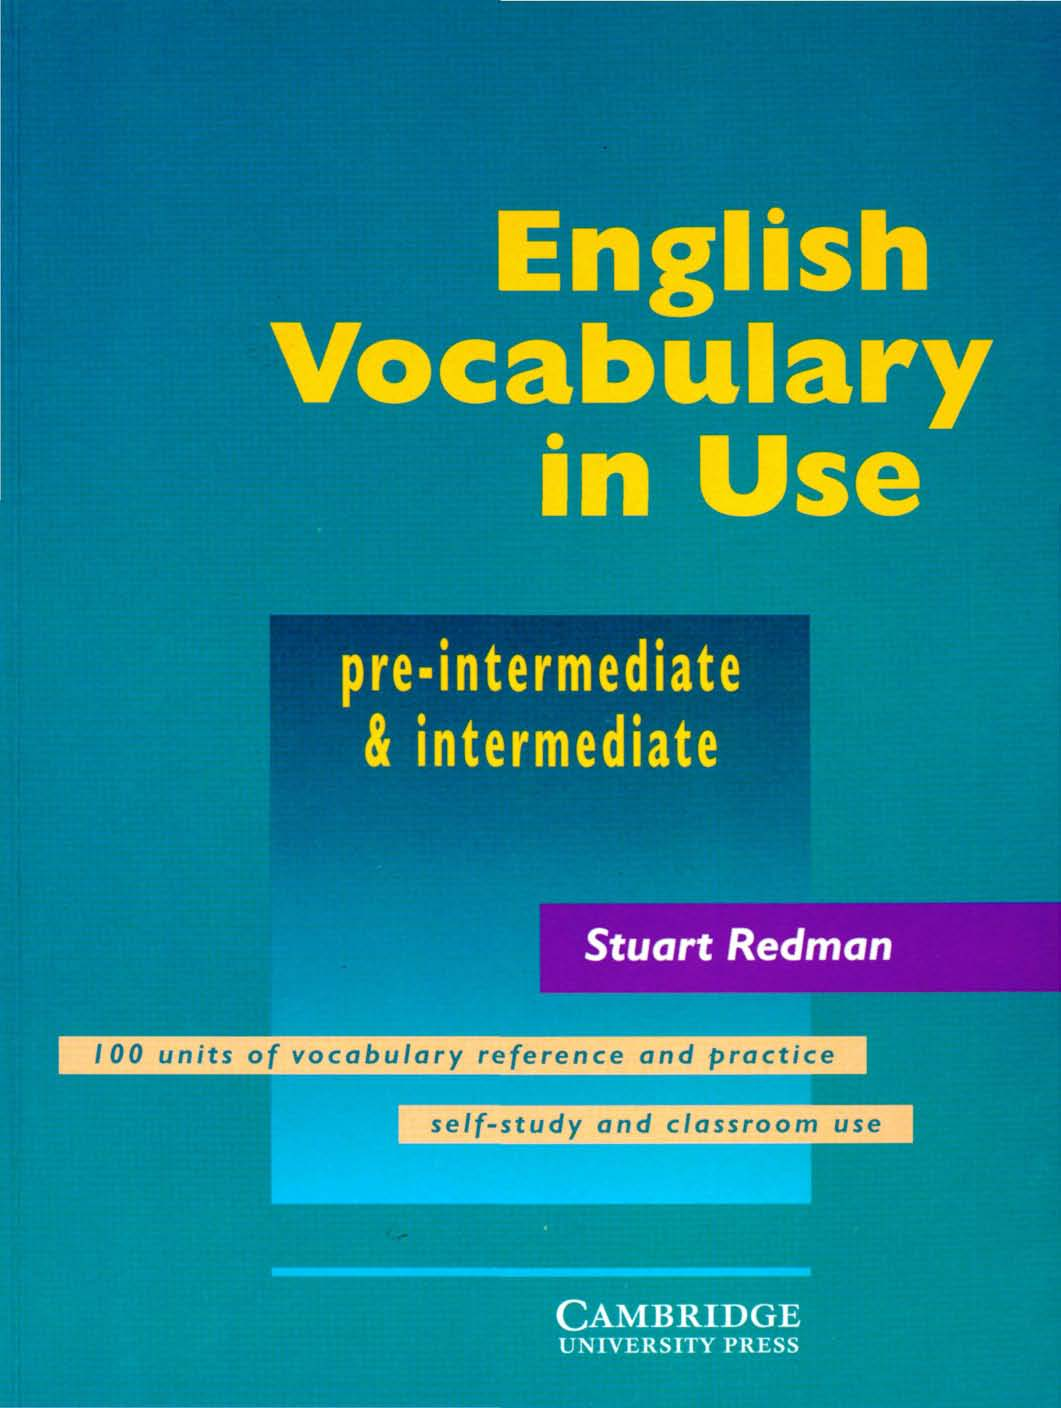 Cambridge - English Vocabulary in Use - Pre-intermidate